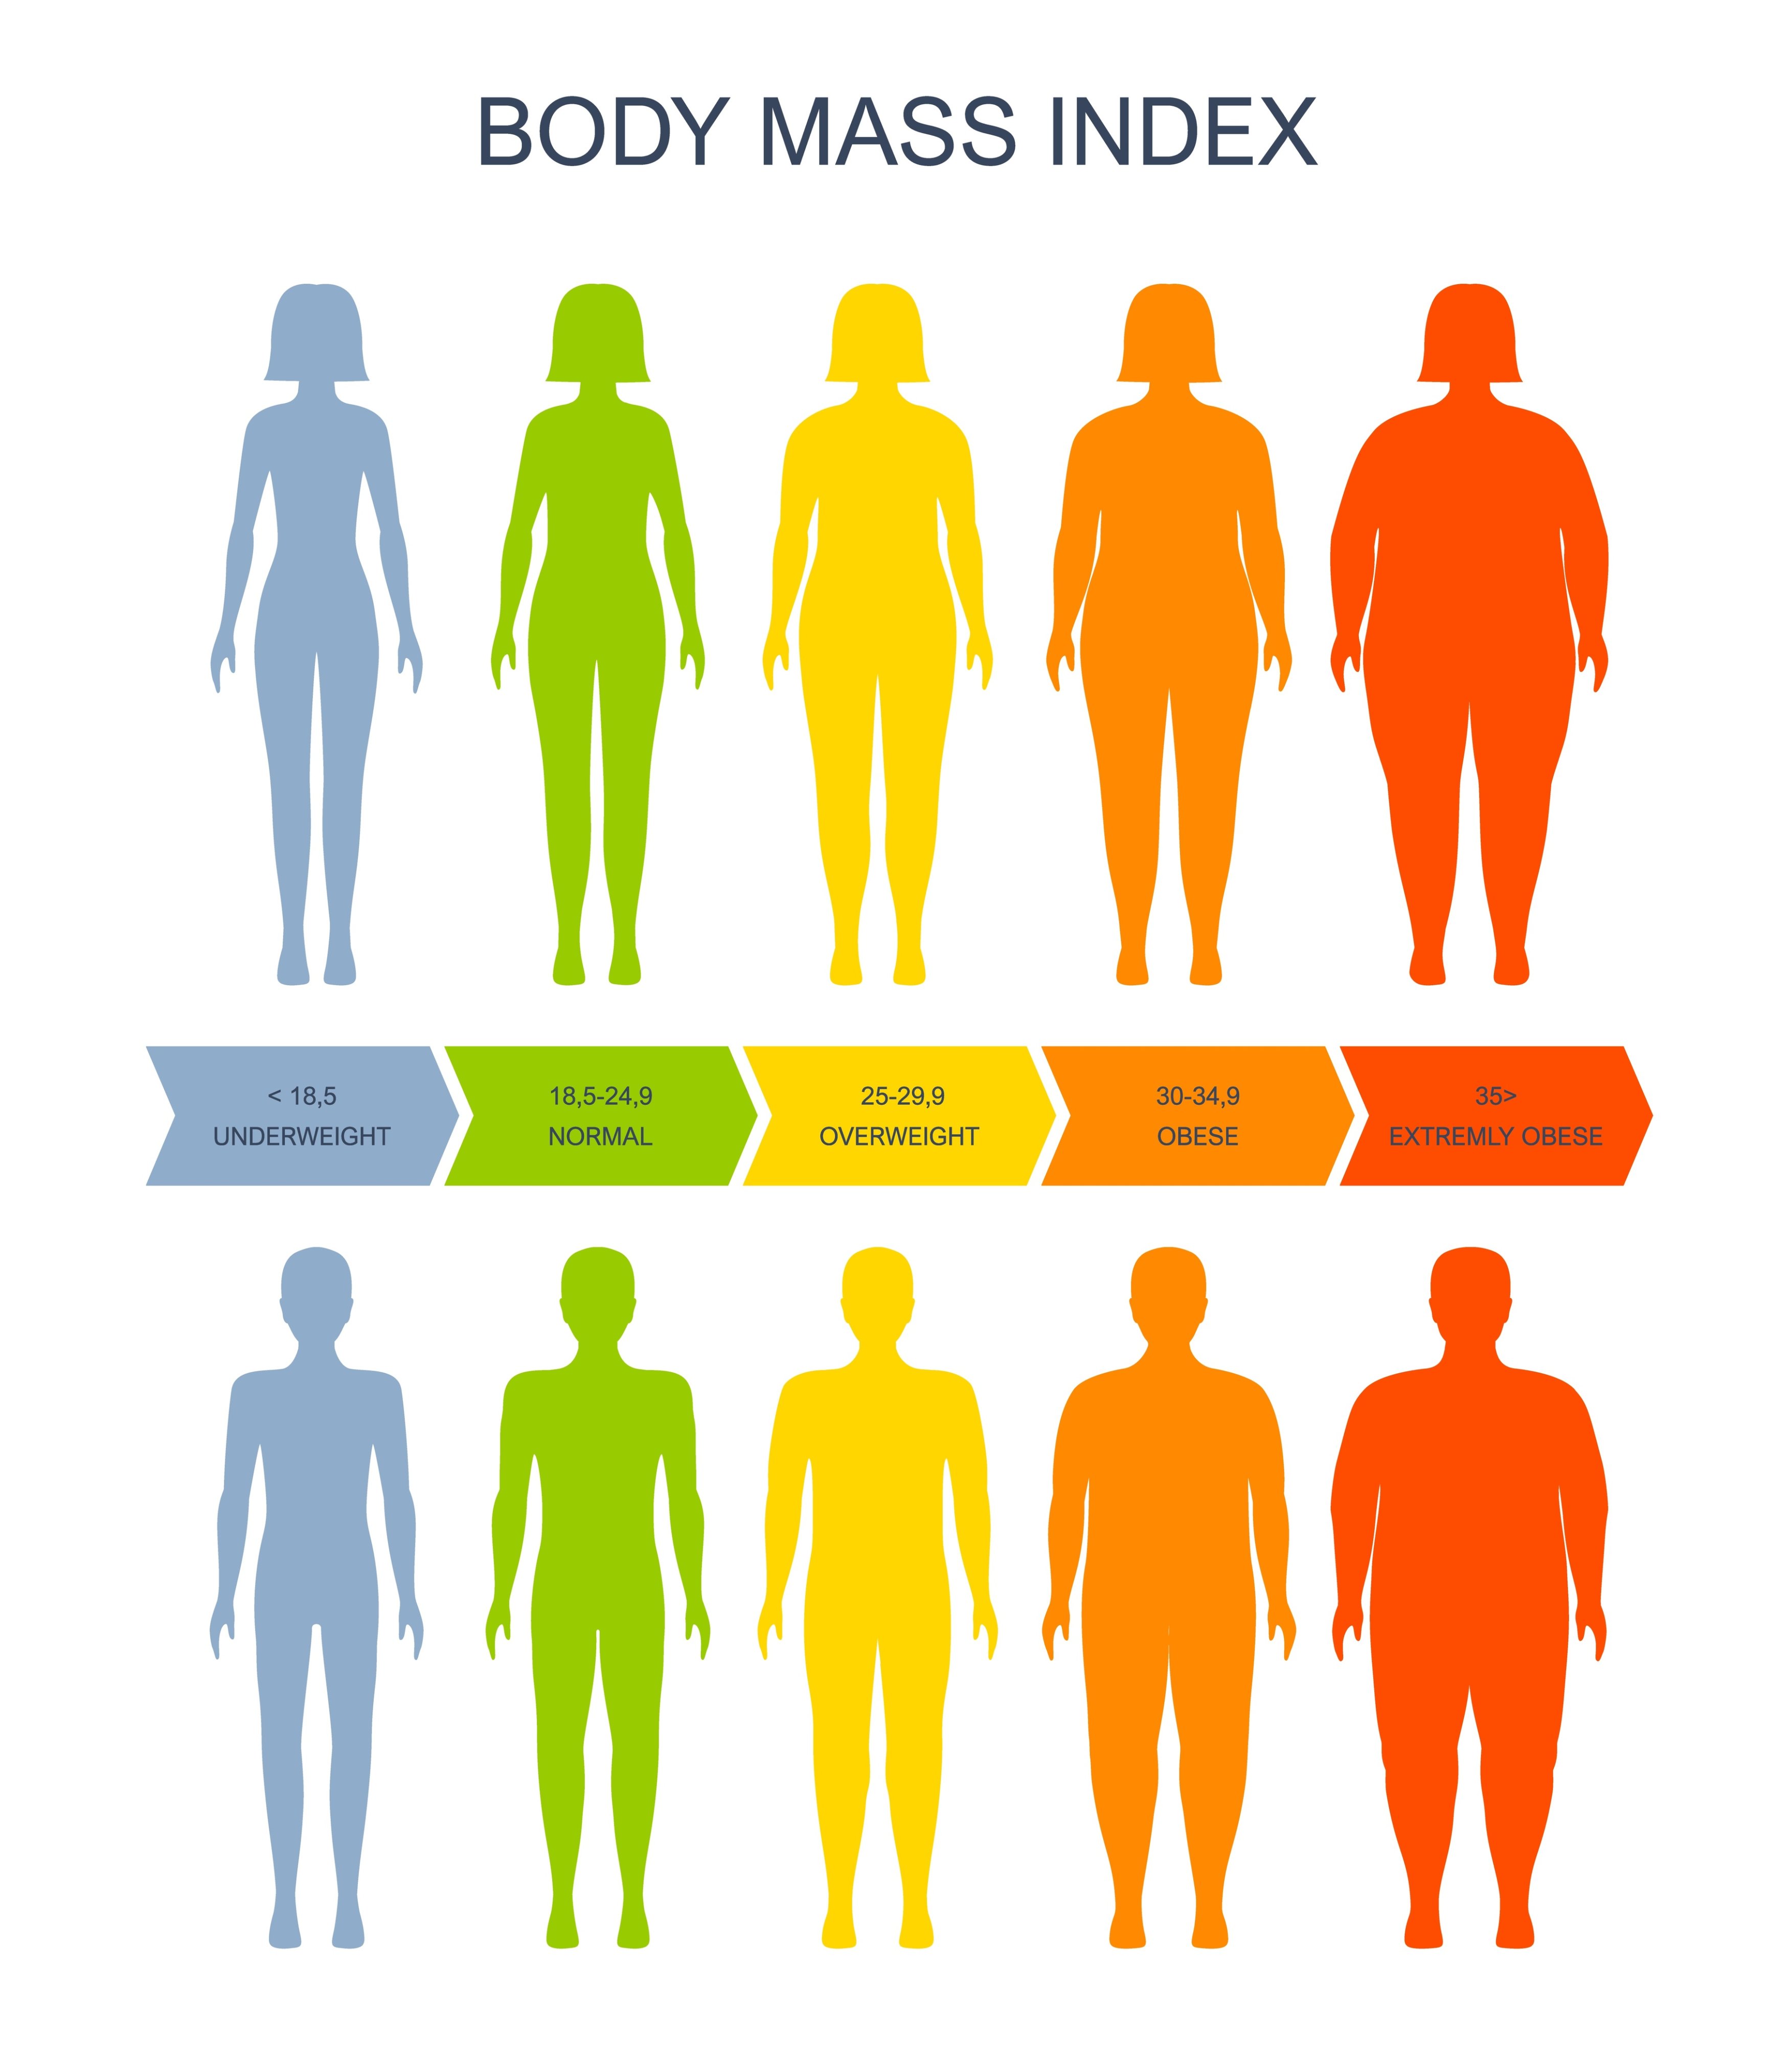 Das Bild zeigt eine Body Mass Index Skala, eine Einteilung in 5 Kategorien, oben weiblich gelesene Silhouette, unten männlich gelesene Silhouette:  blau unter 18,5 underweight, grün 18,5 -24,9 normal, gelb 25 – 29,9 overweight, orange 30 – 34,9 obese, rot 35+ extremely obese. Quelle: Buch&Bee